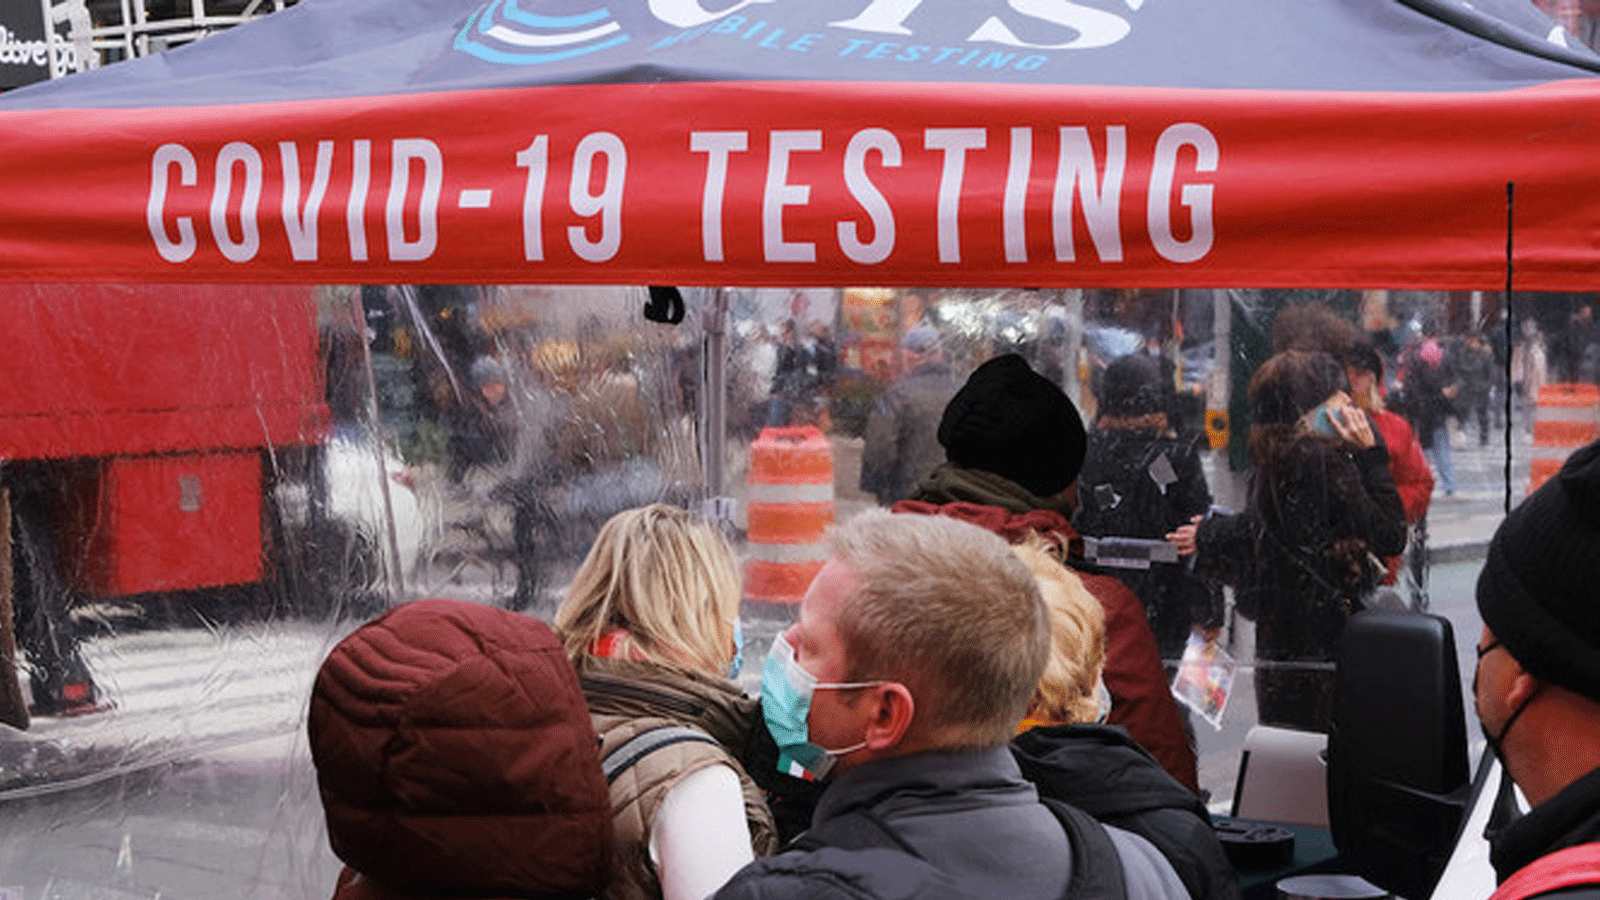  الناس ينتظرون في طابور لإجراء اختبار COVID-19 في منشأة اختبار في تايمز سكوير. 9 كانون الأول/ديسمبر 2021 في مدينة نيويورك.